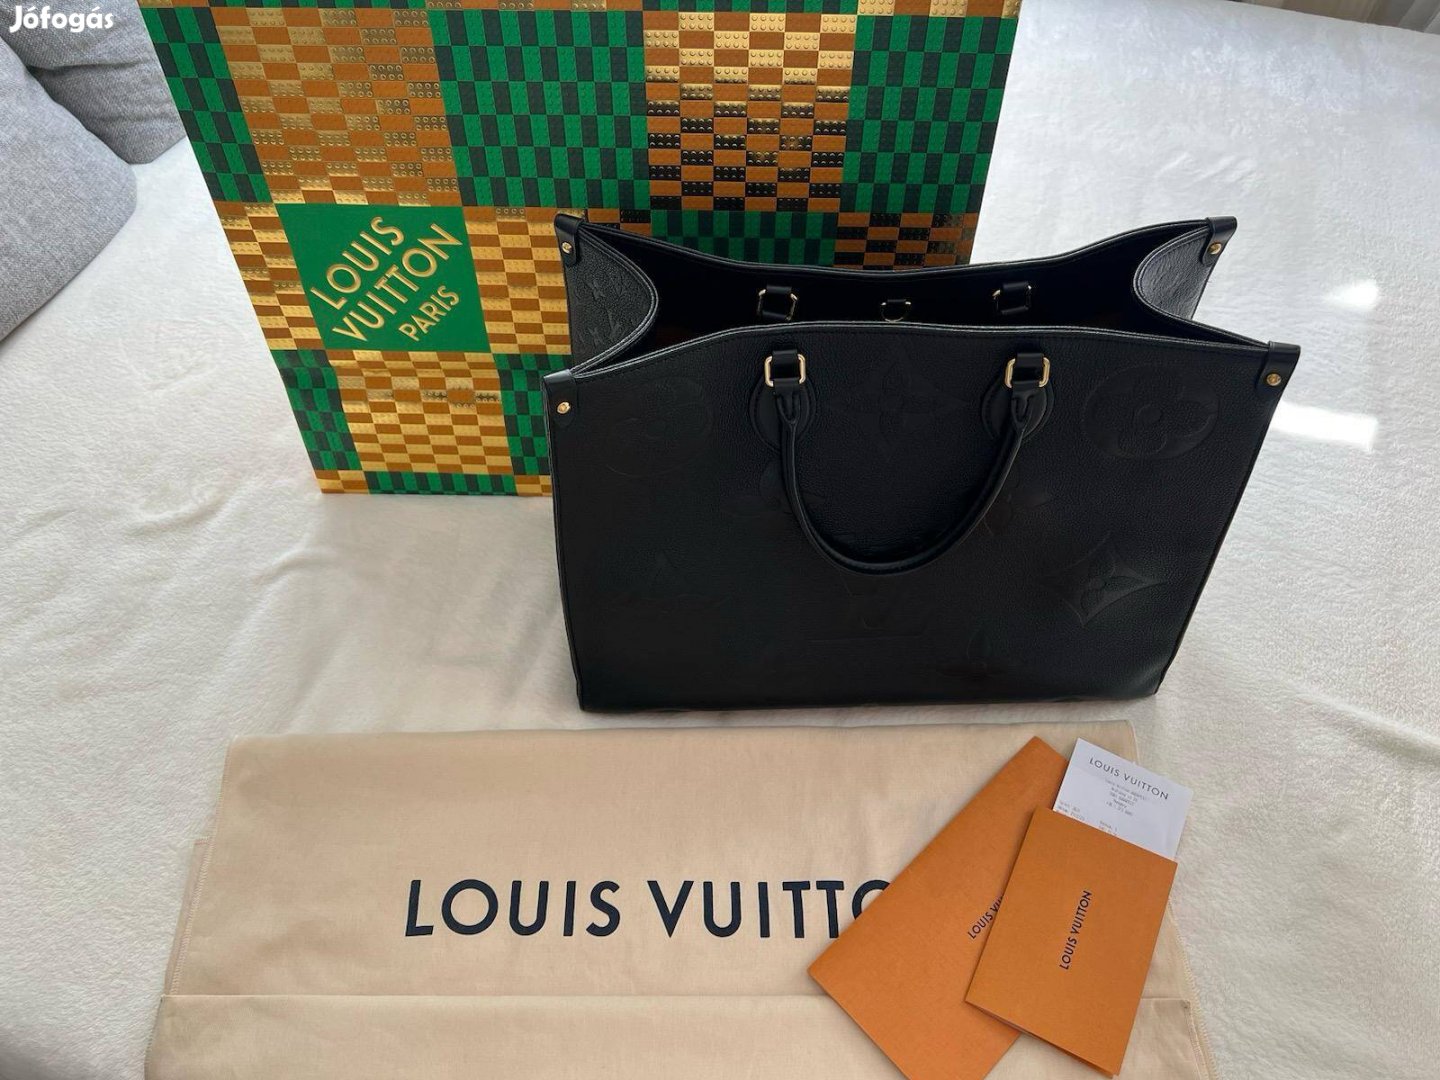 Eredeti alight használt Louis Vuitton táska eladó!